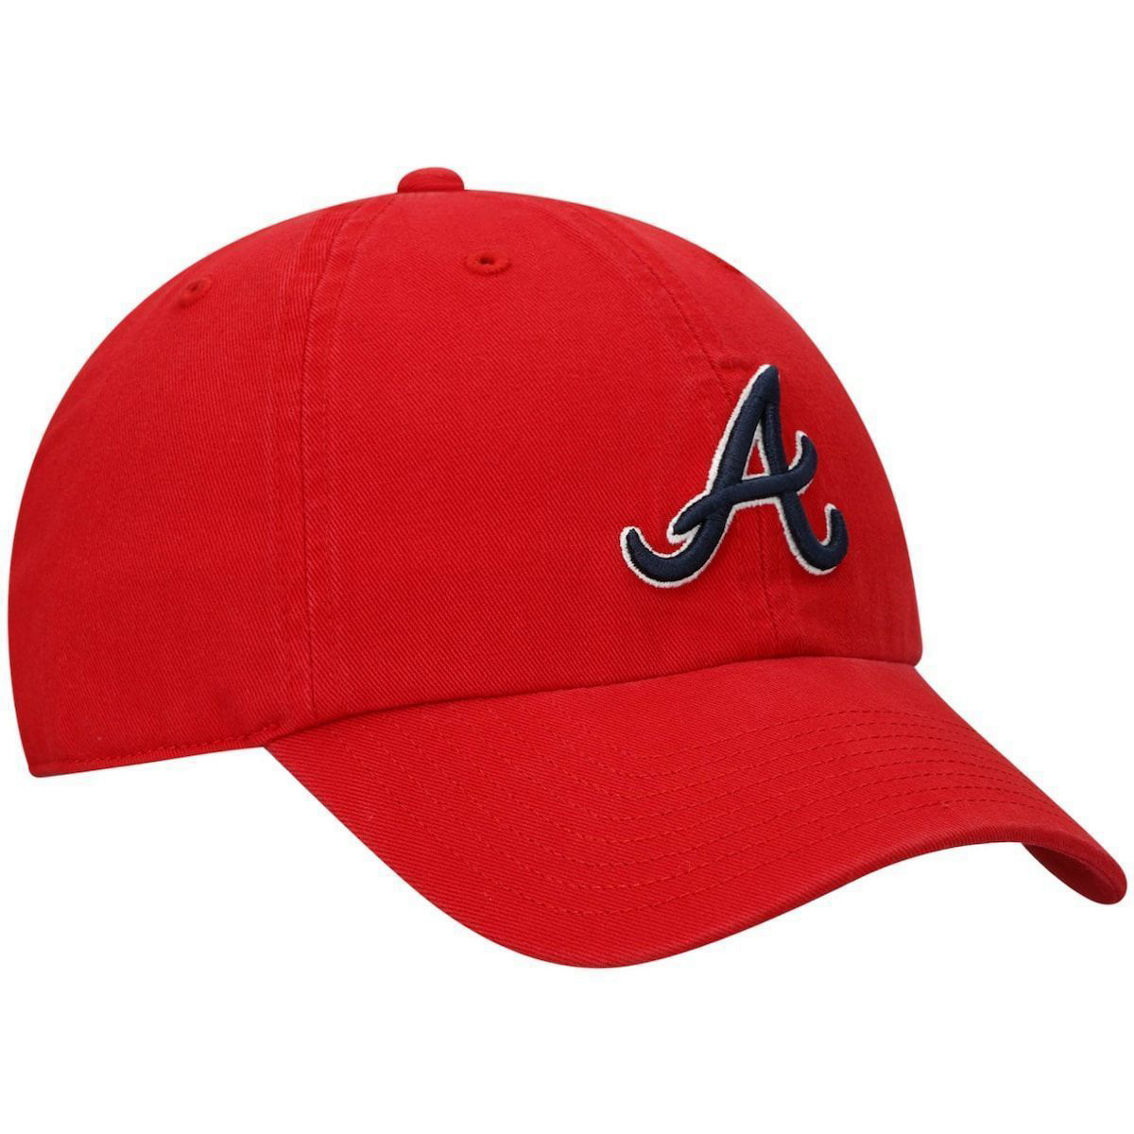 '47 Men's Red Atlanta Braves Clean Up Adjustable Hat - Image 4 of 4